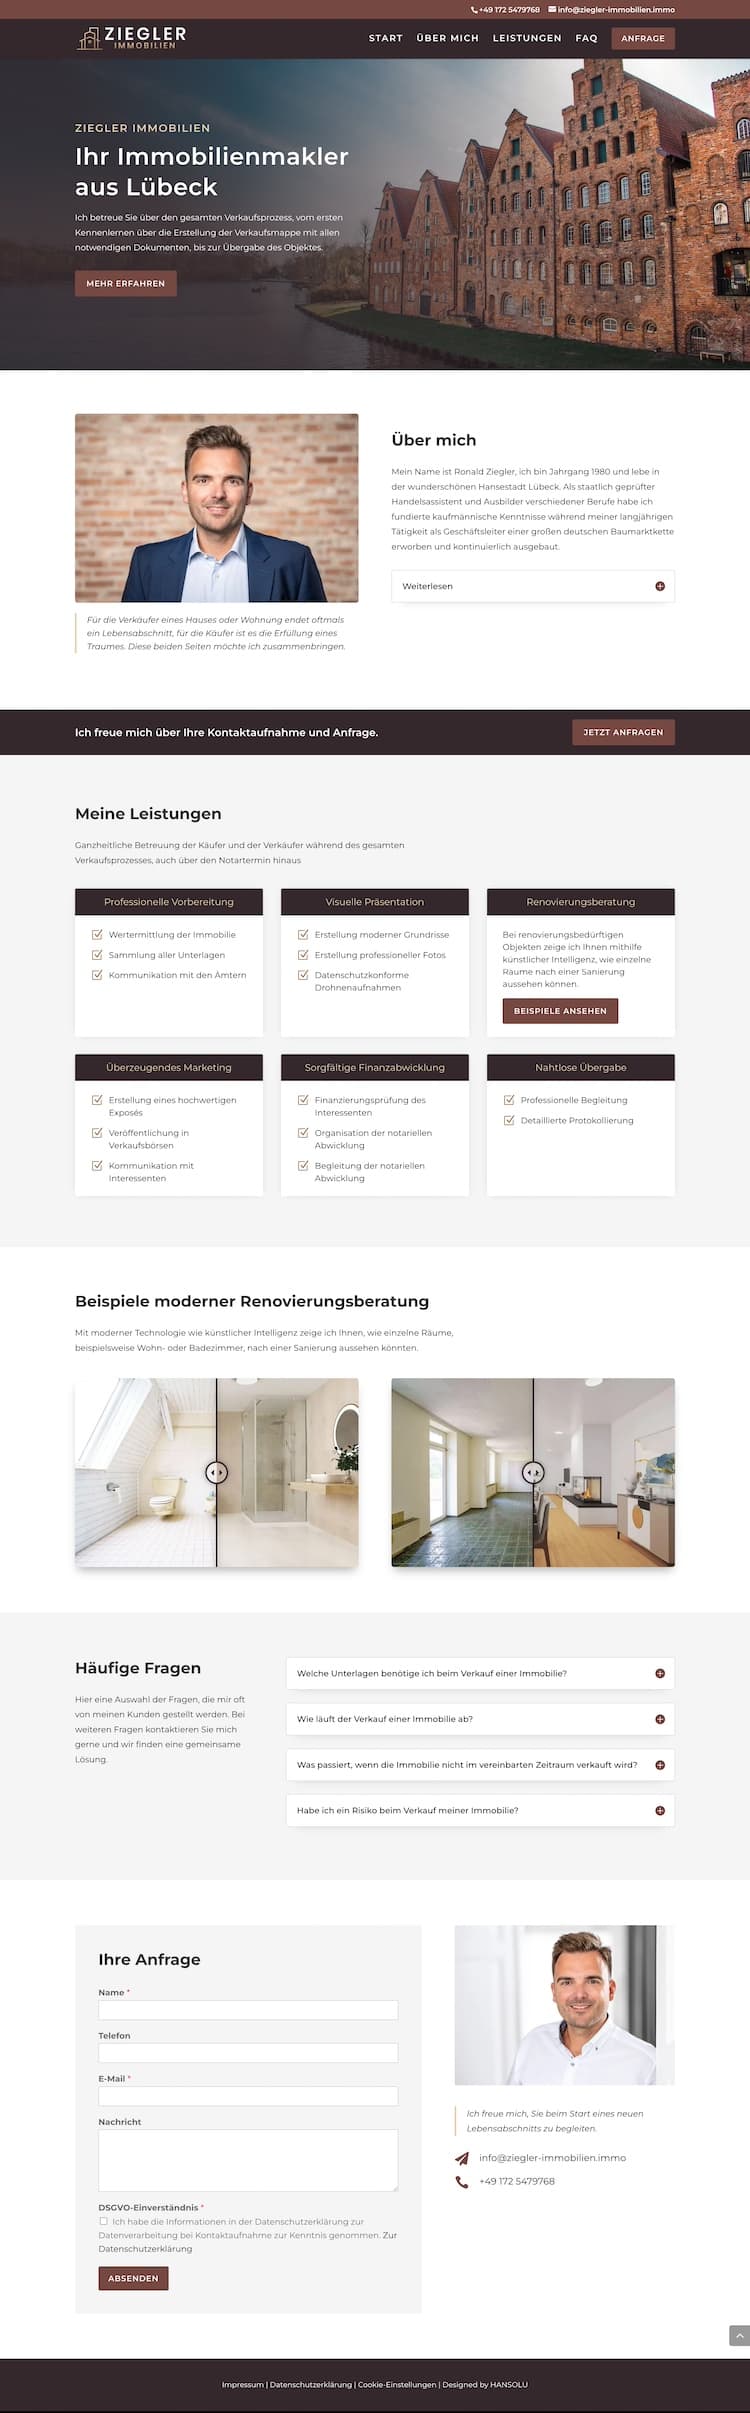 Bildschirmfoto von der One-Page Website für den Immobilienmakler Ziegler